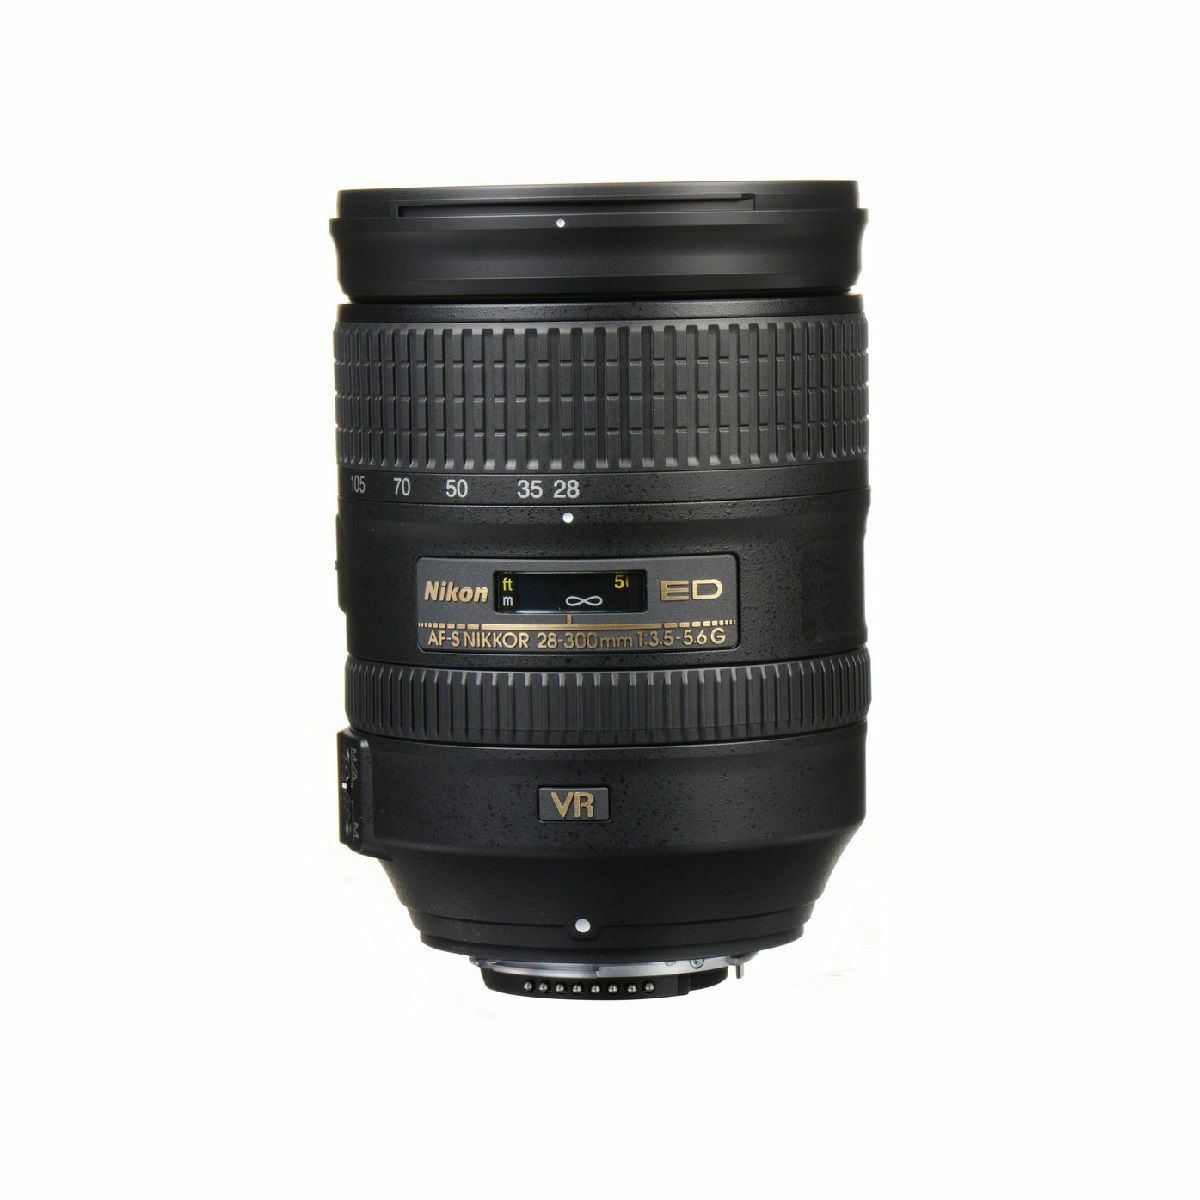 Nikon AF-S NIKKOR 28-300mm f/3.5-5.6G ED